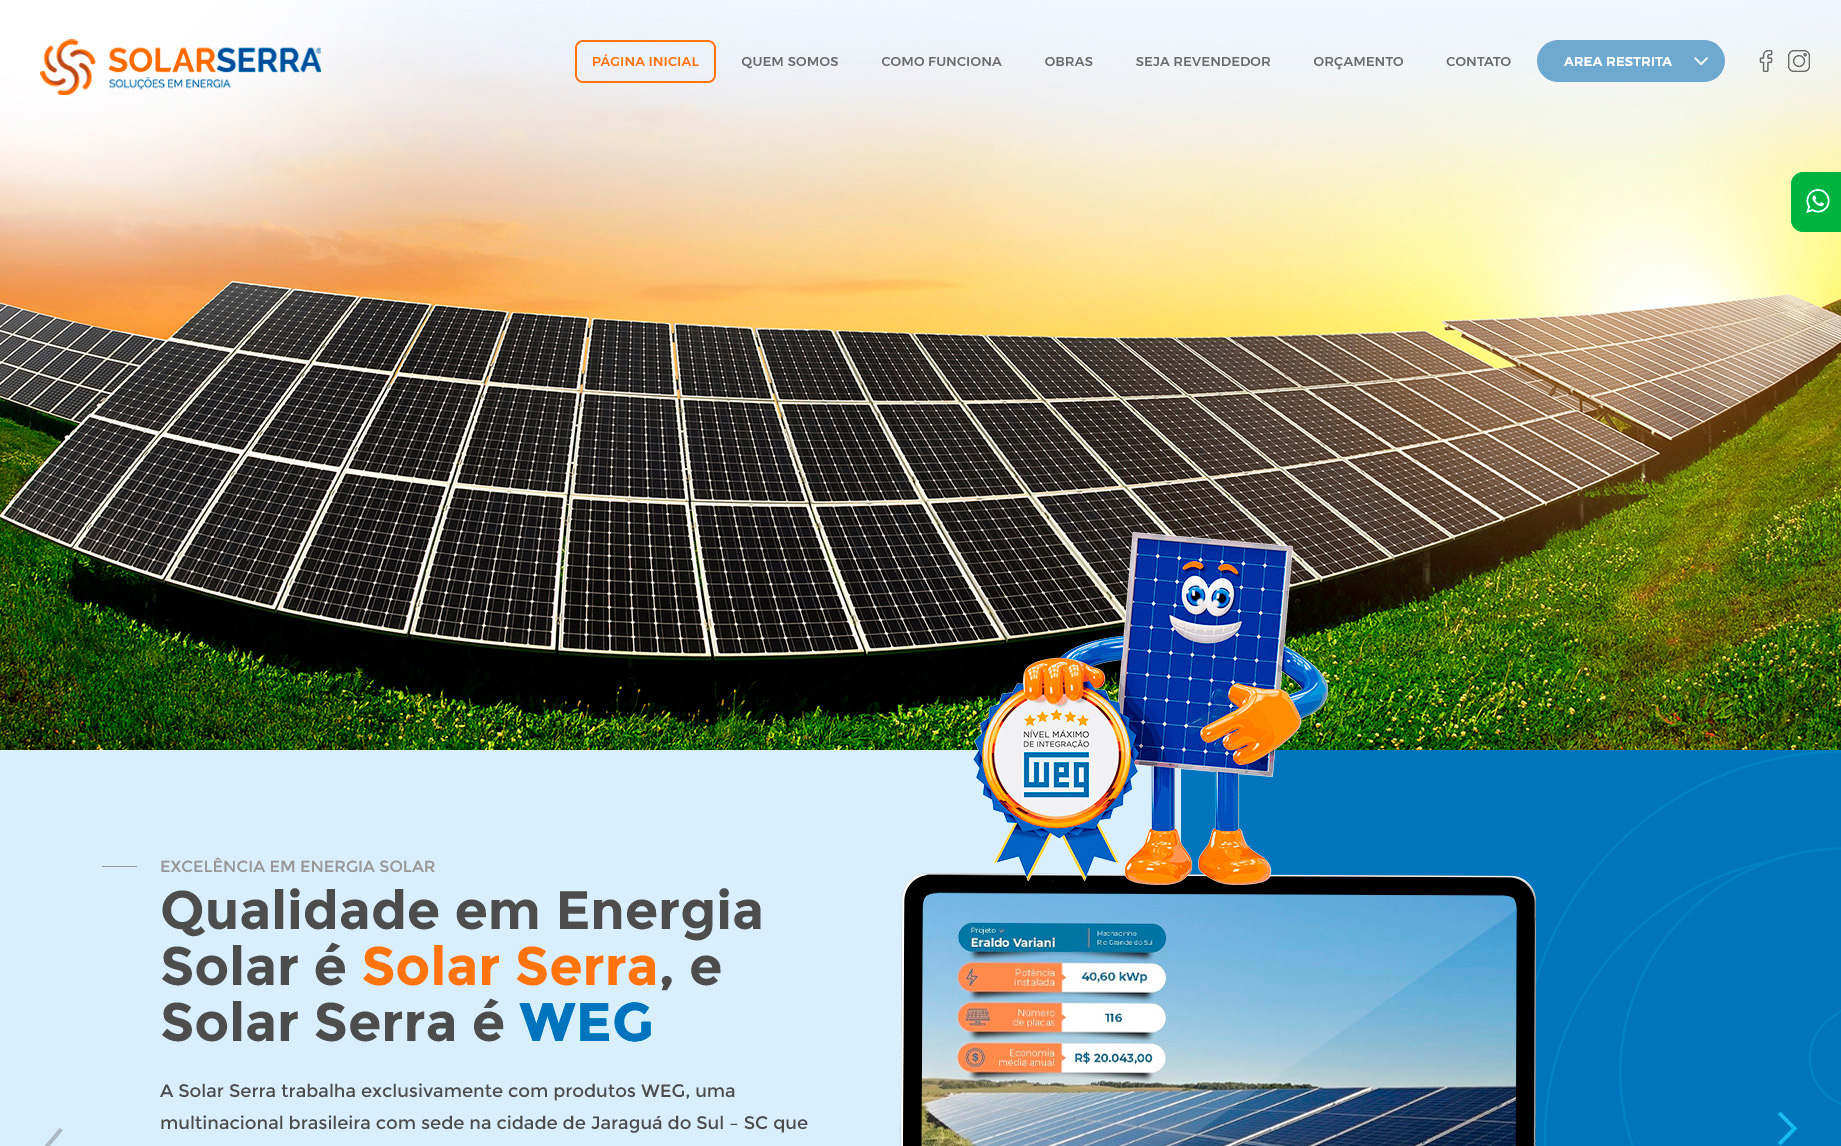 tela inicial do site solarserra.com.br